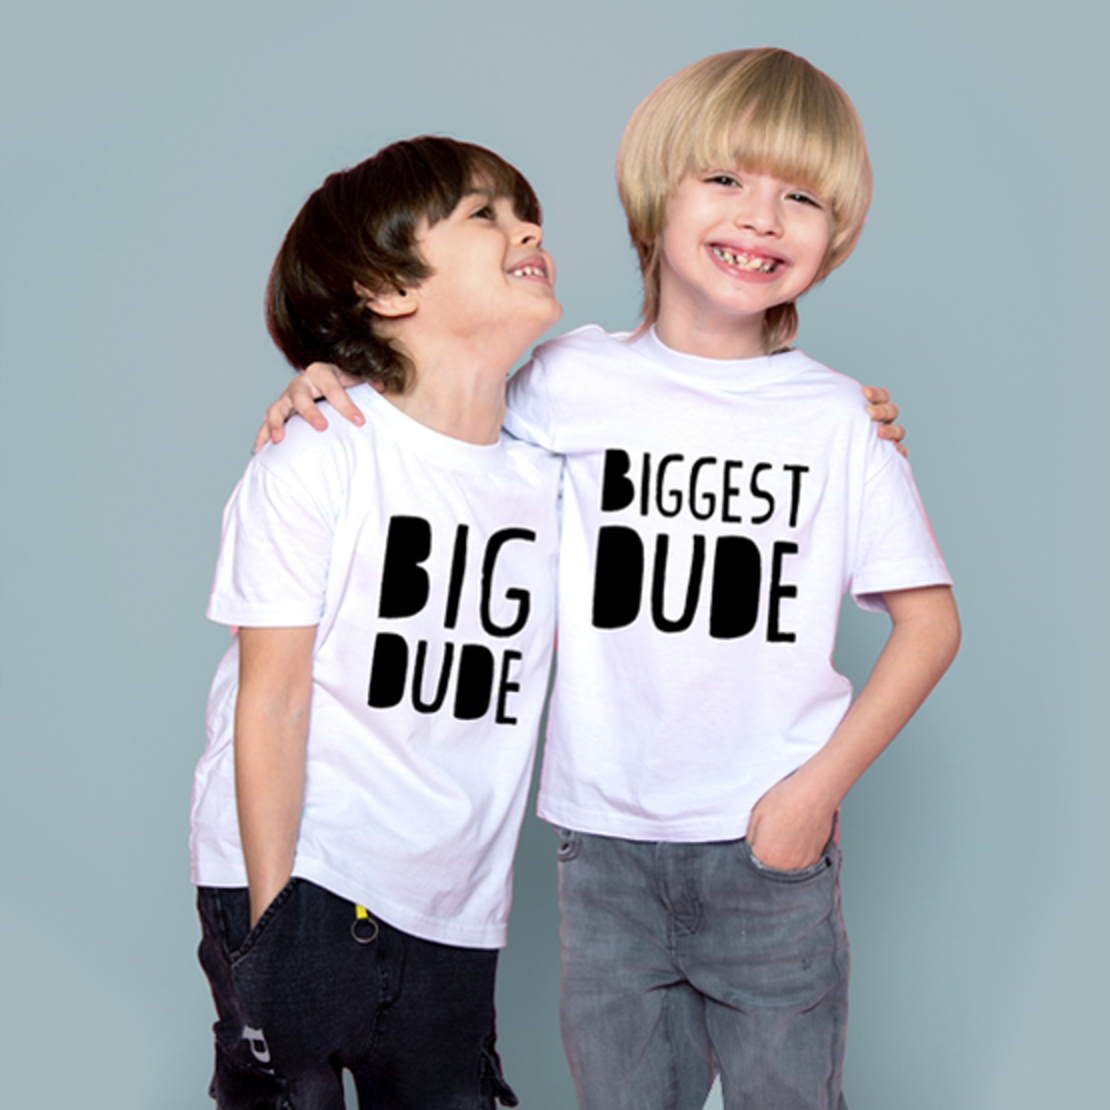 צמד חולצות אח גדול / אח קטן -DUDE